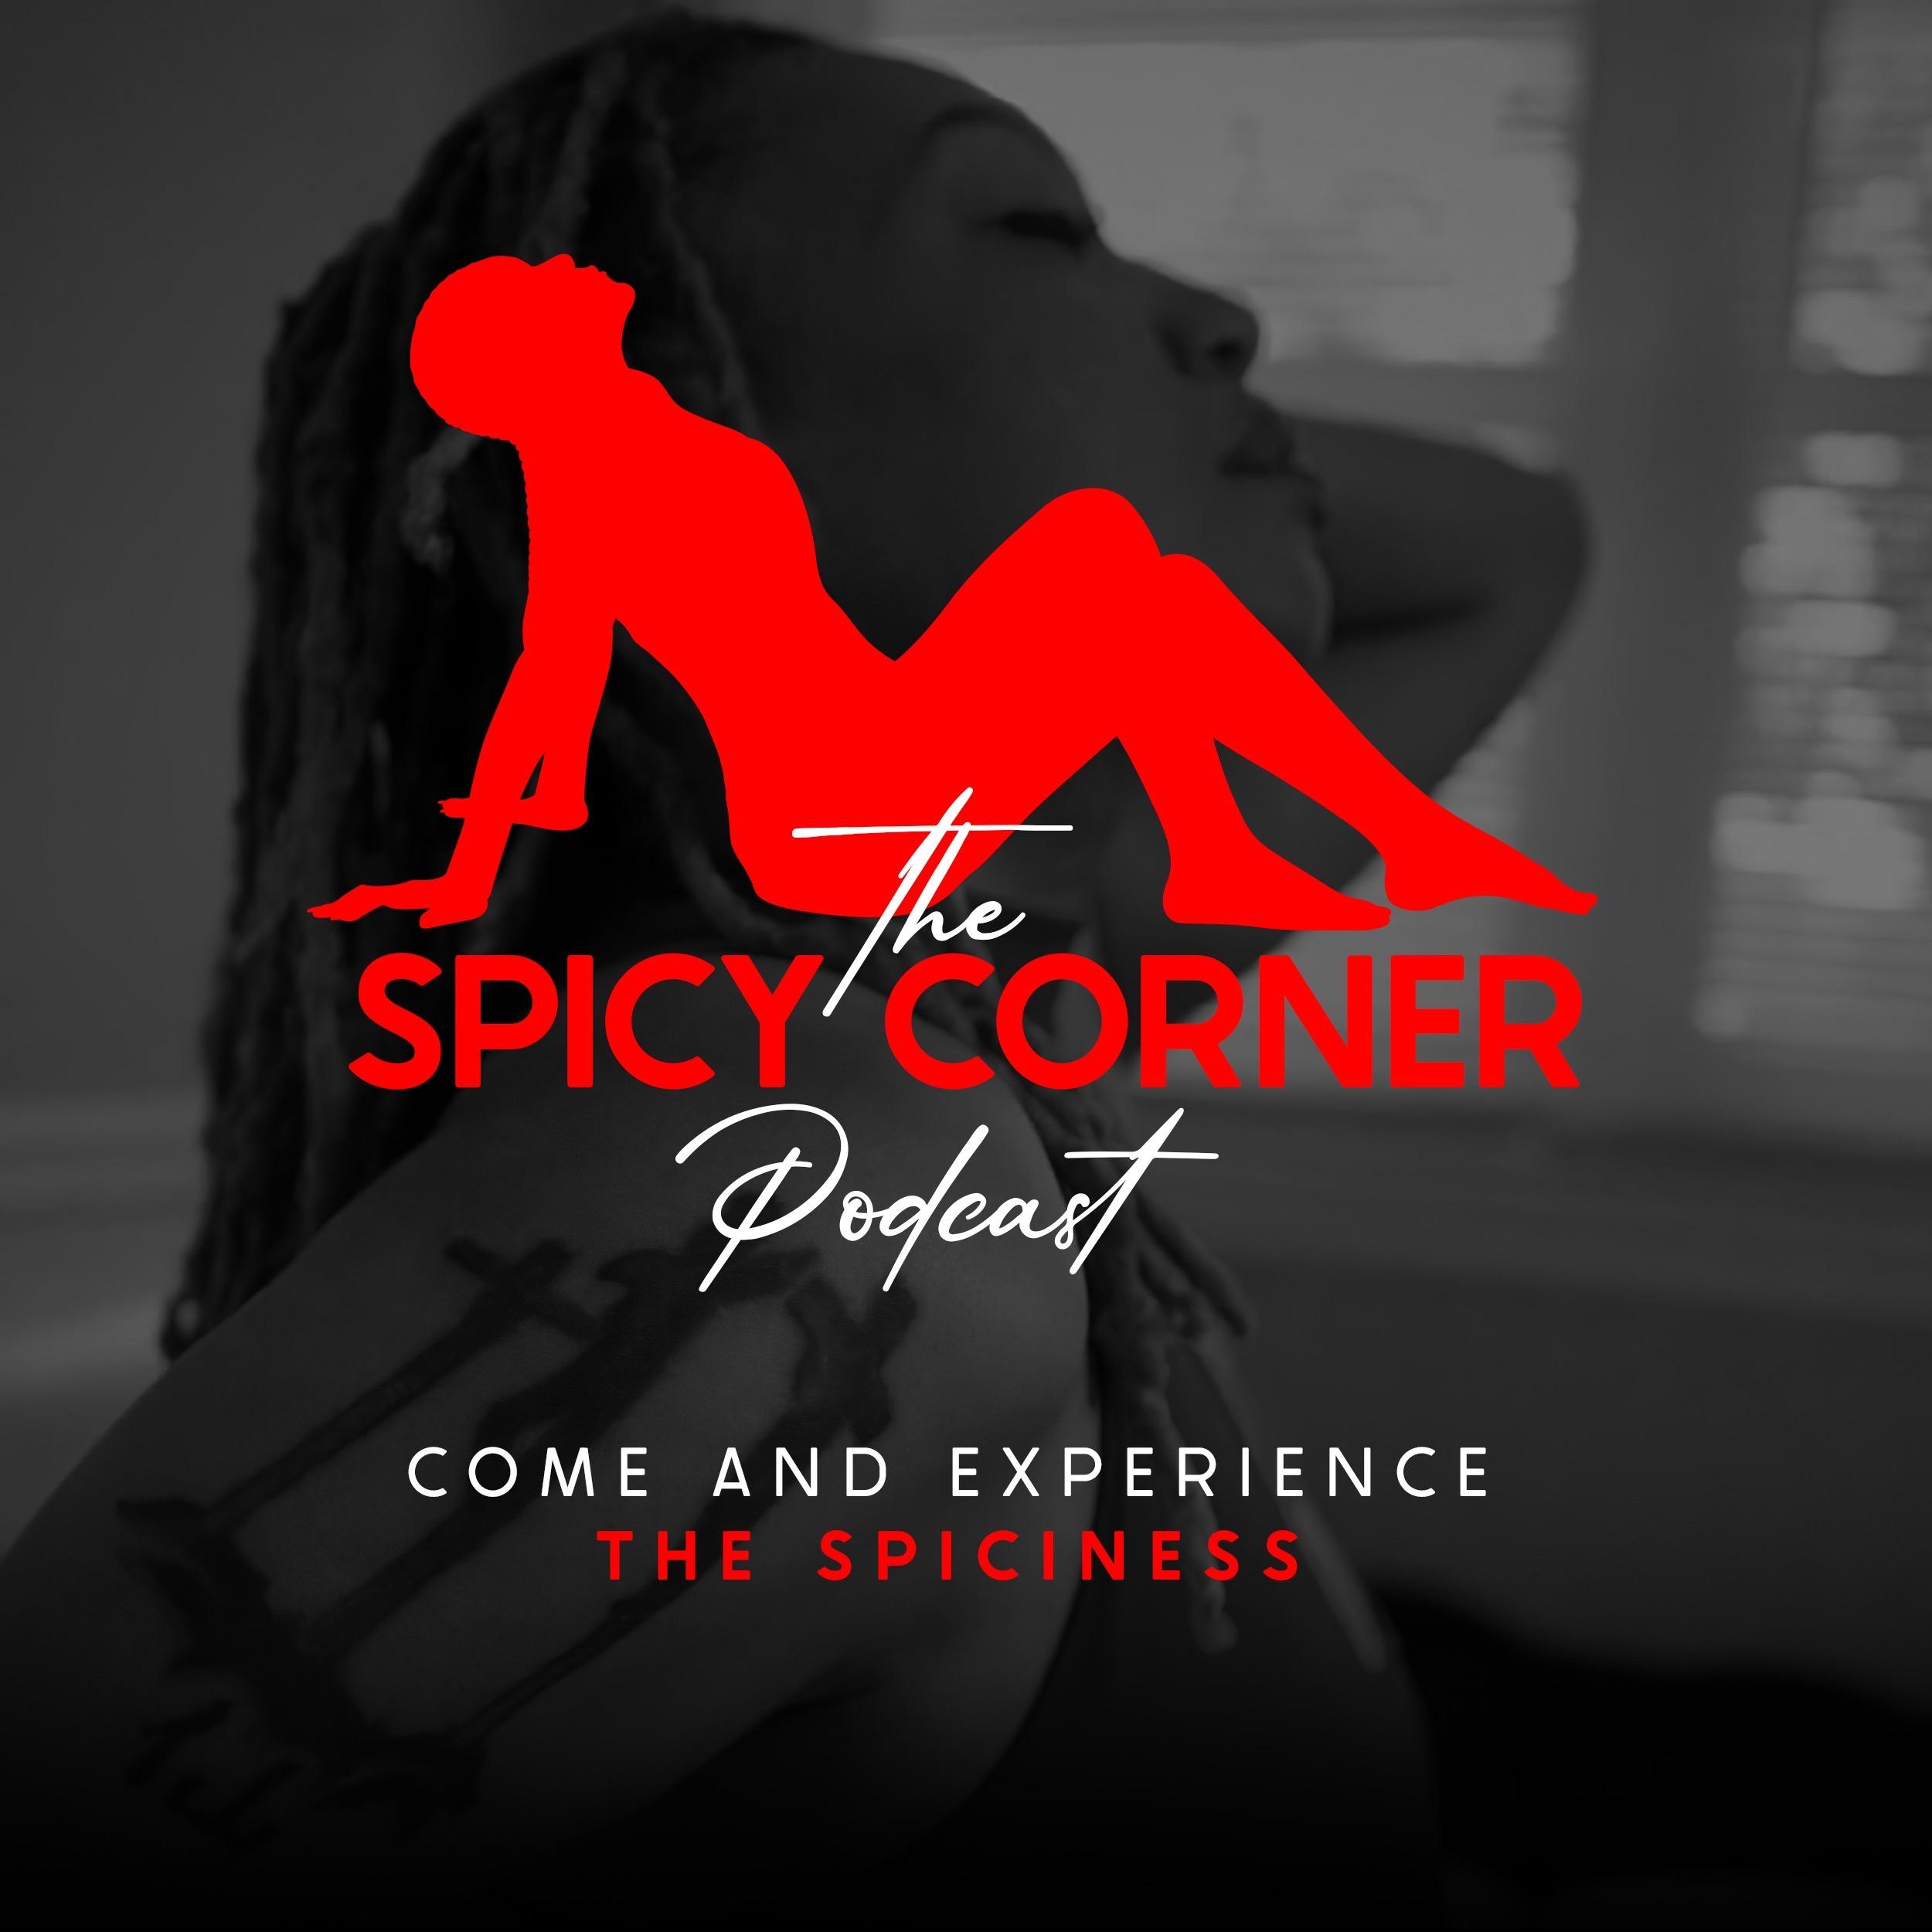 The Spicy Corner